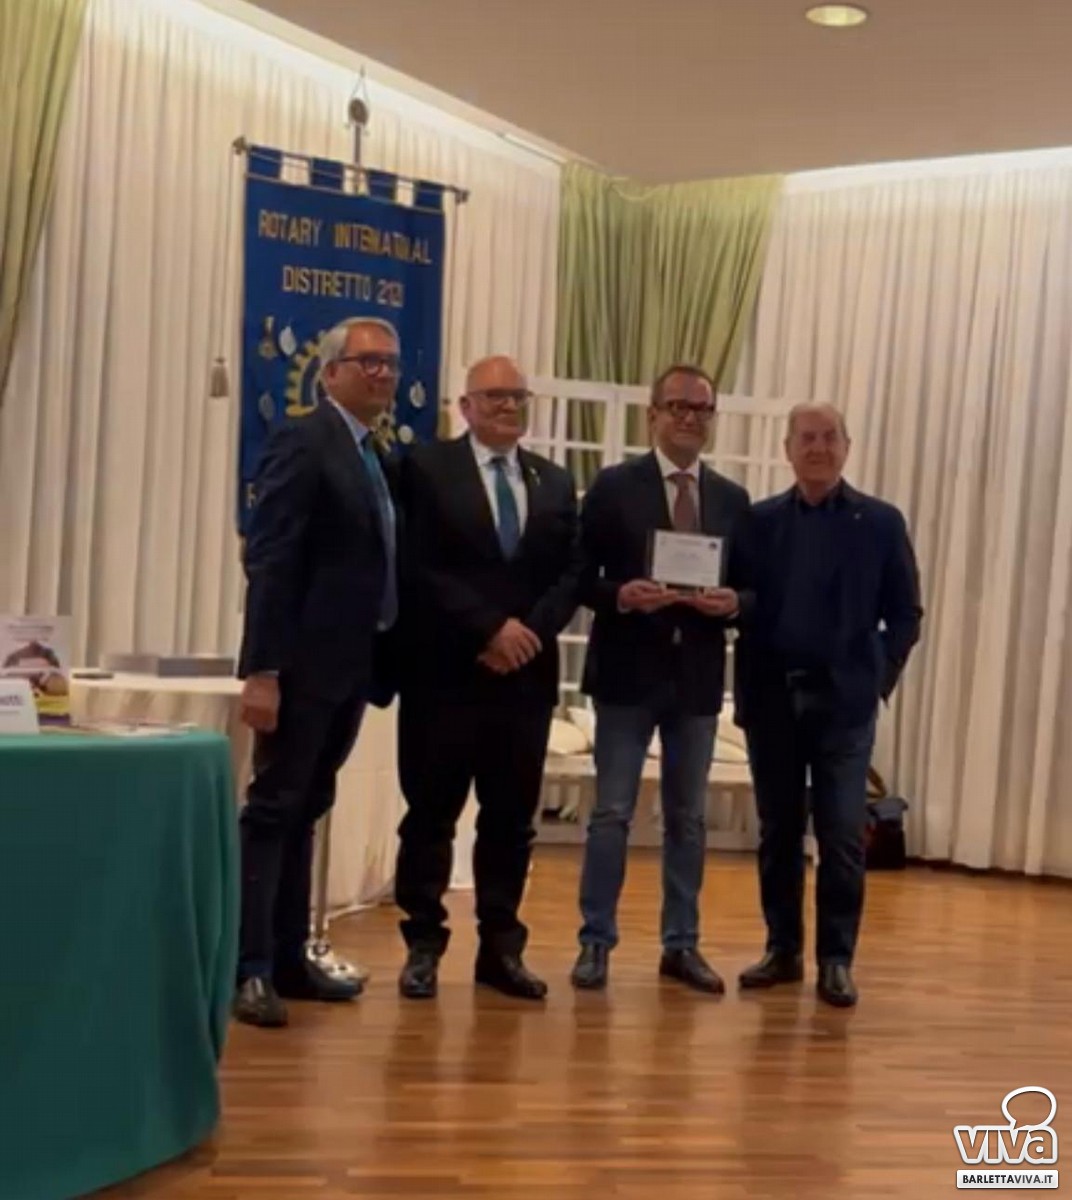 Premio Rotary alla professionalità ad Aldo Musti